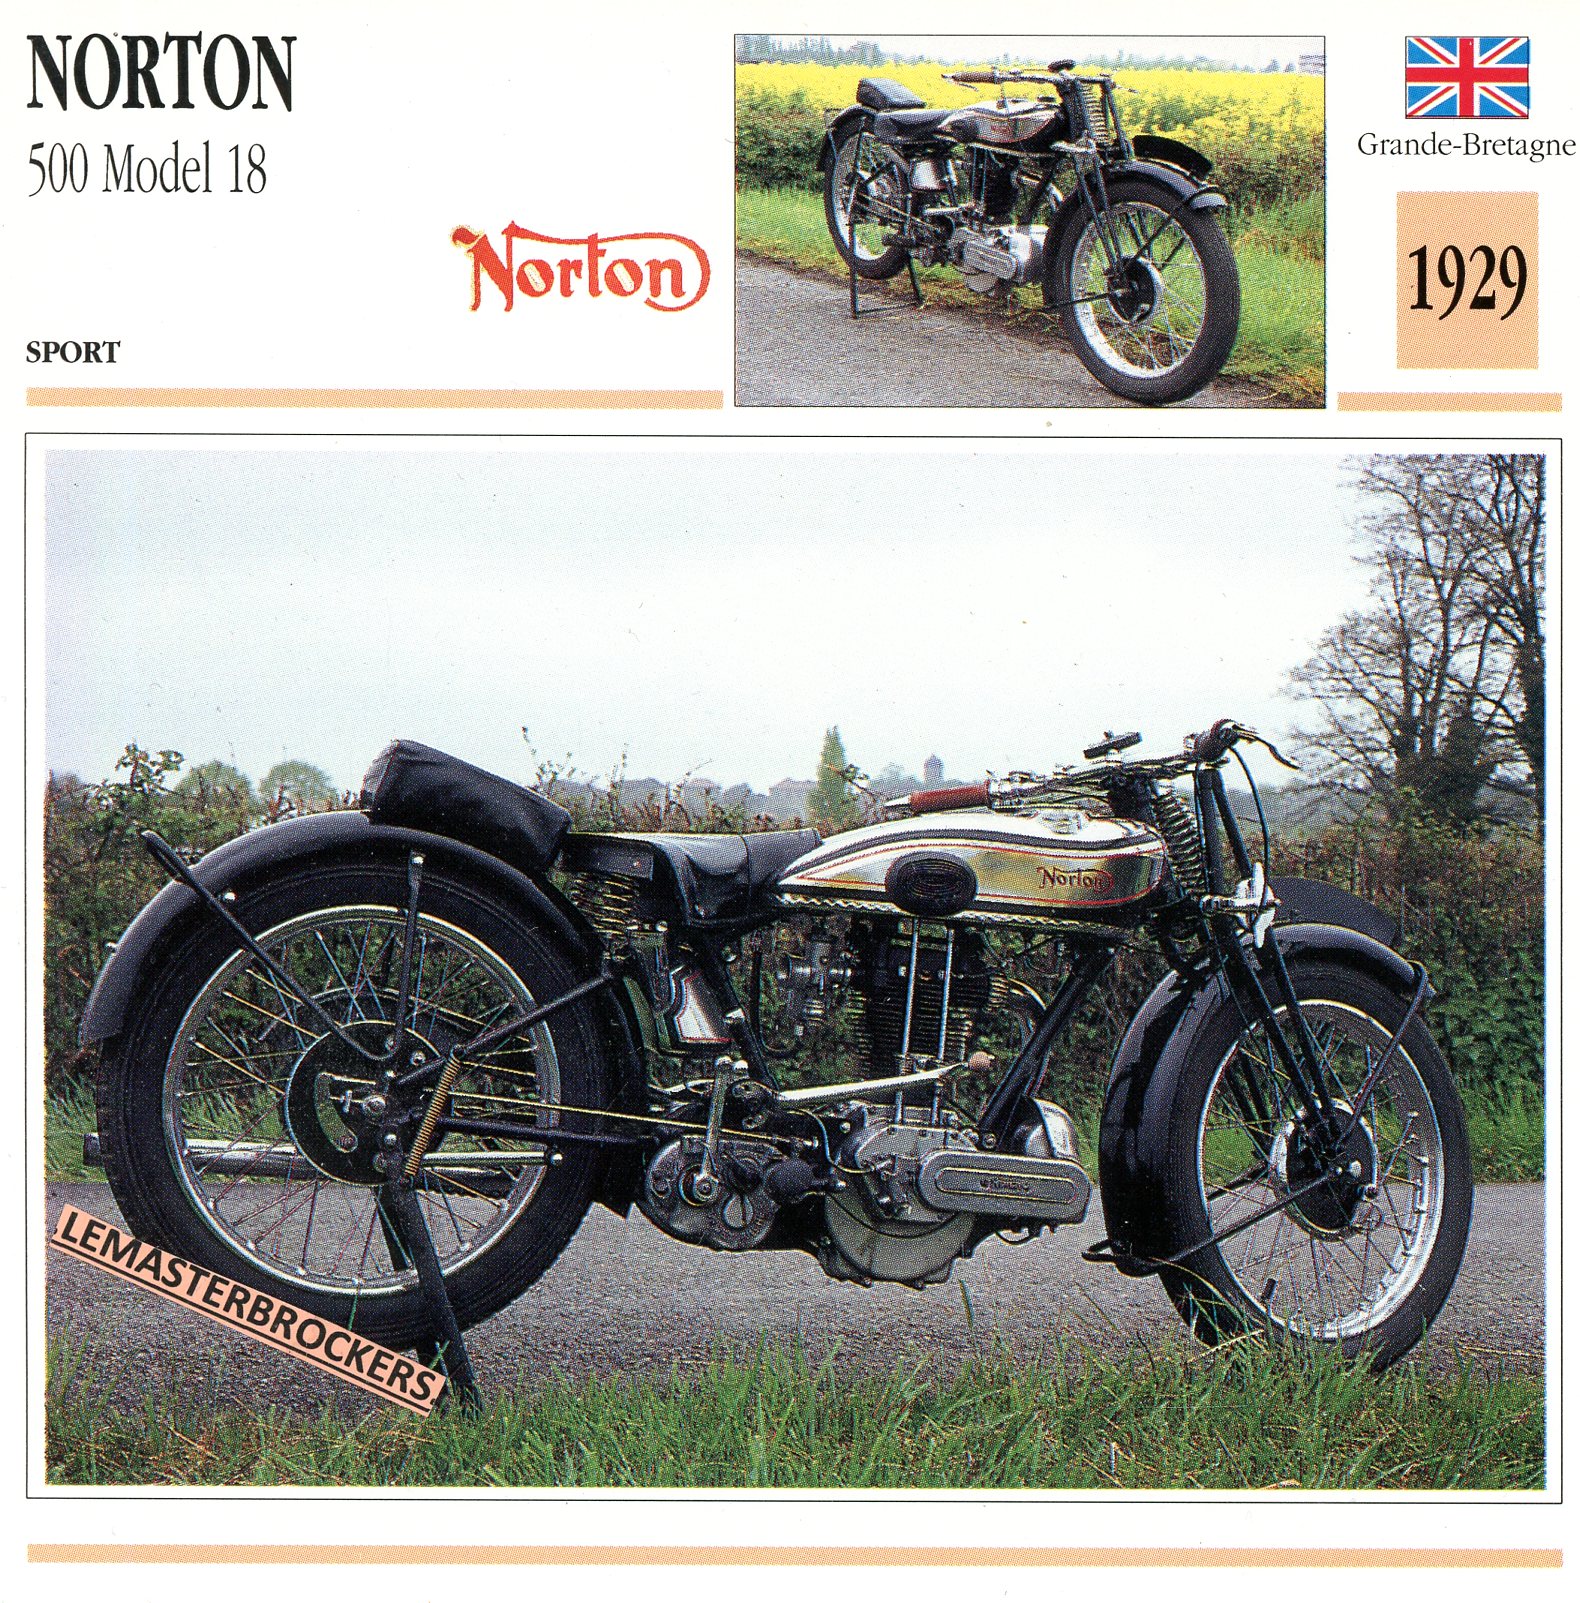 NORTON-500-MODEL18-1929-FICHE-MOTO-ATLAS-lemasterbrockers-CARD-MOTORCYCLE